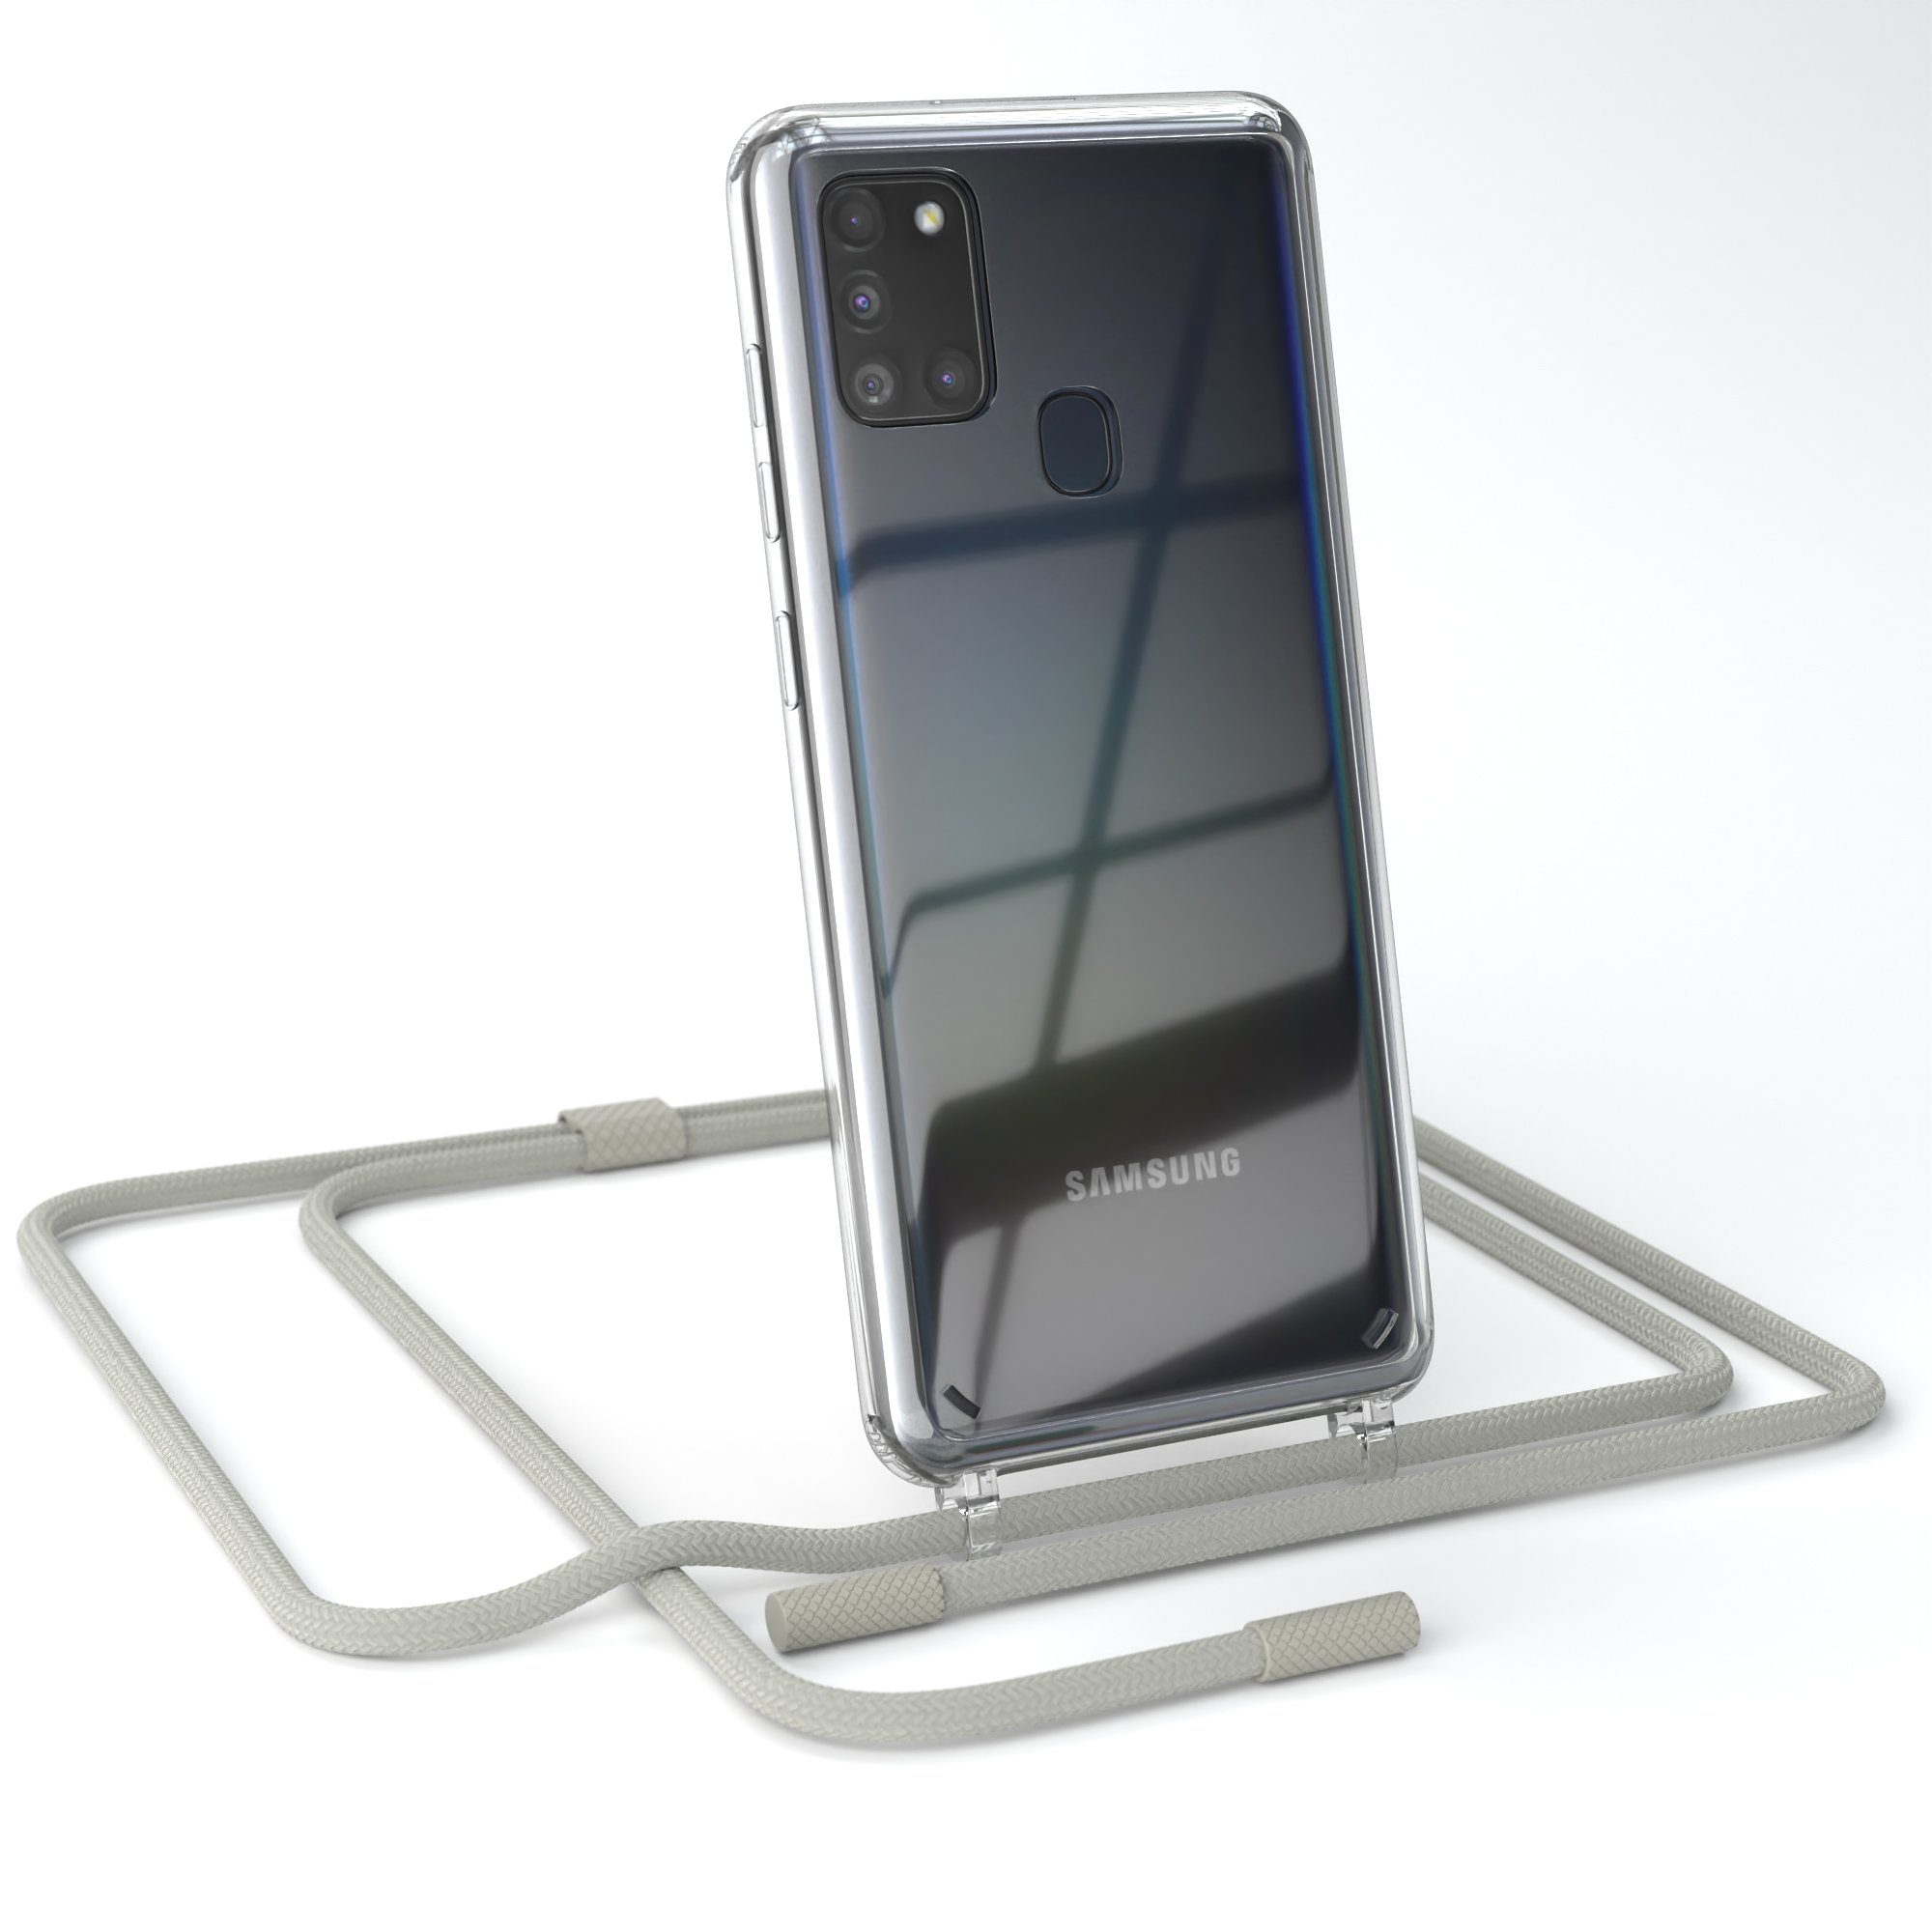 EAZY CASE Handykette Silikon Kette Unifarbe für Samsung Galaxy A21s 6,5 Zoll, Schutzhülle zum Umhängen Hülle mit Umhängeband Kettenhülle Grau Taupe